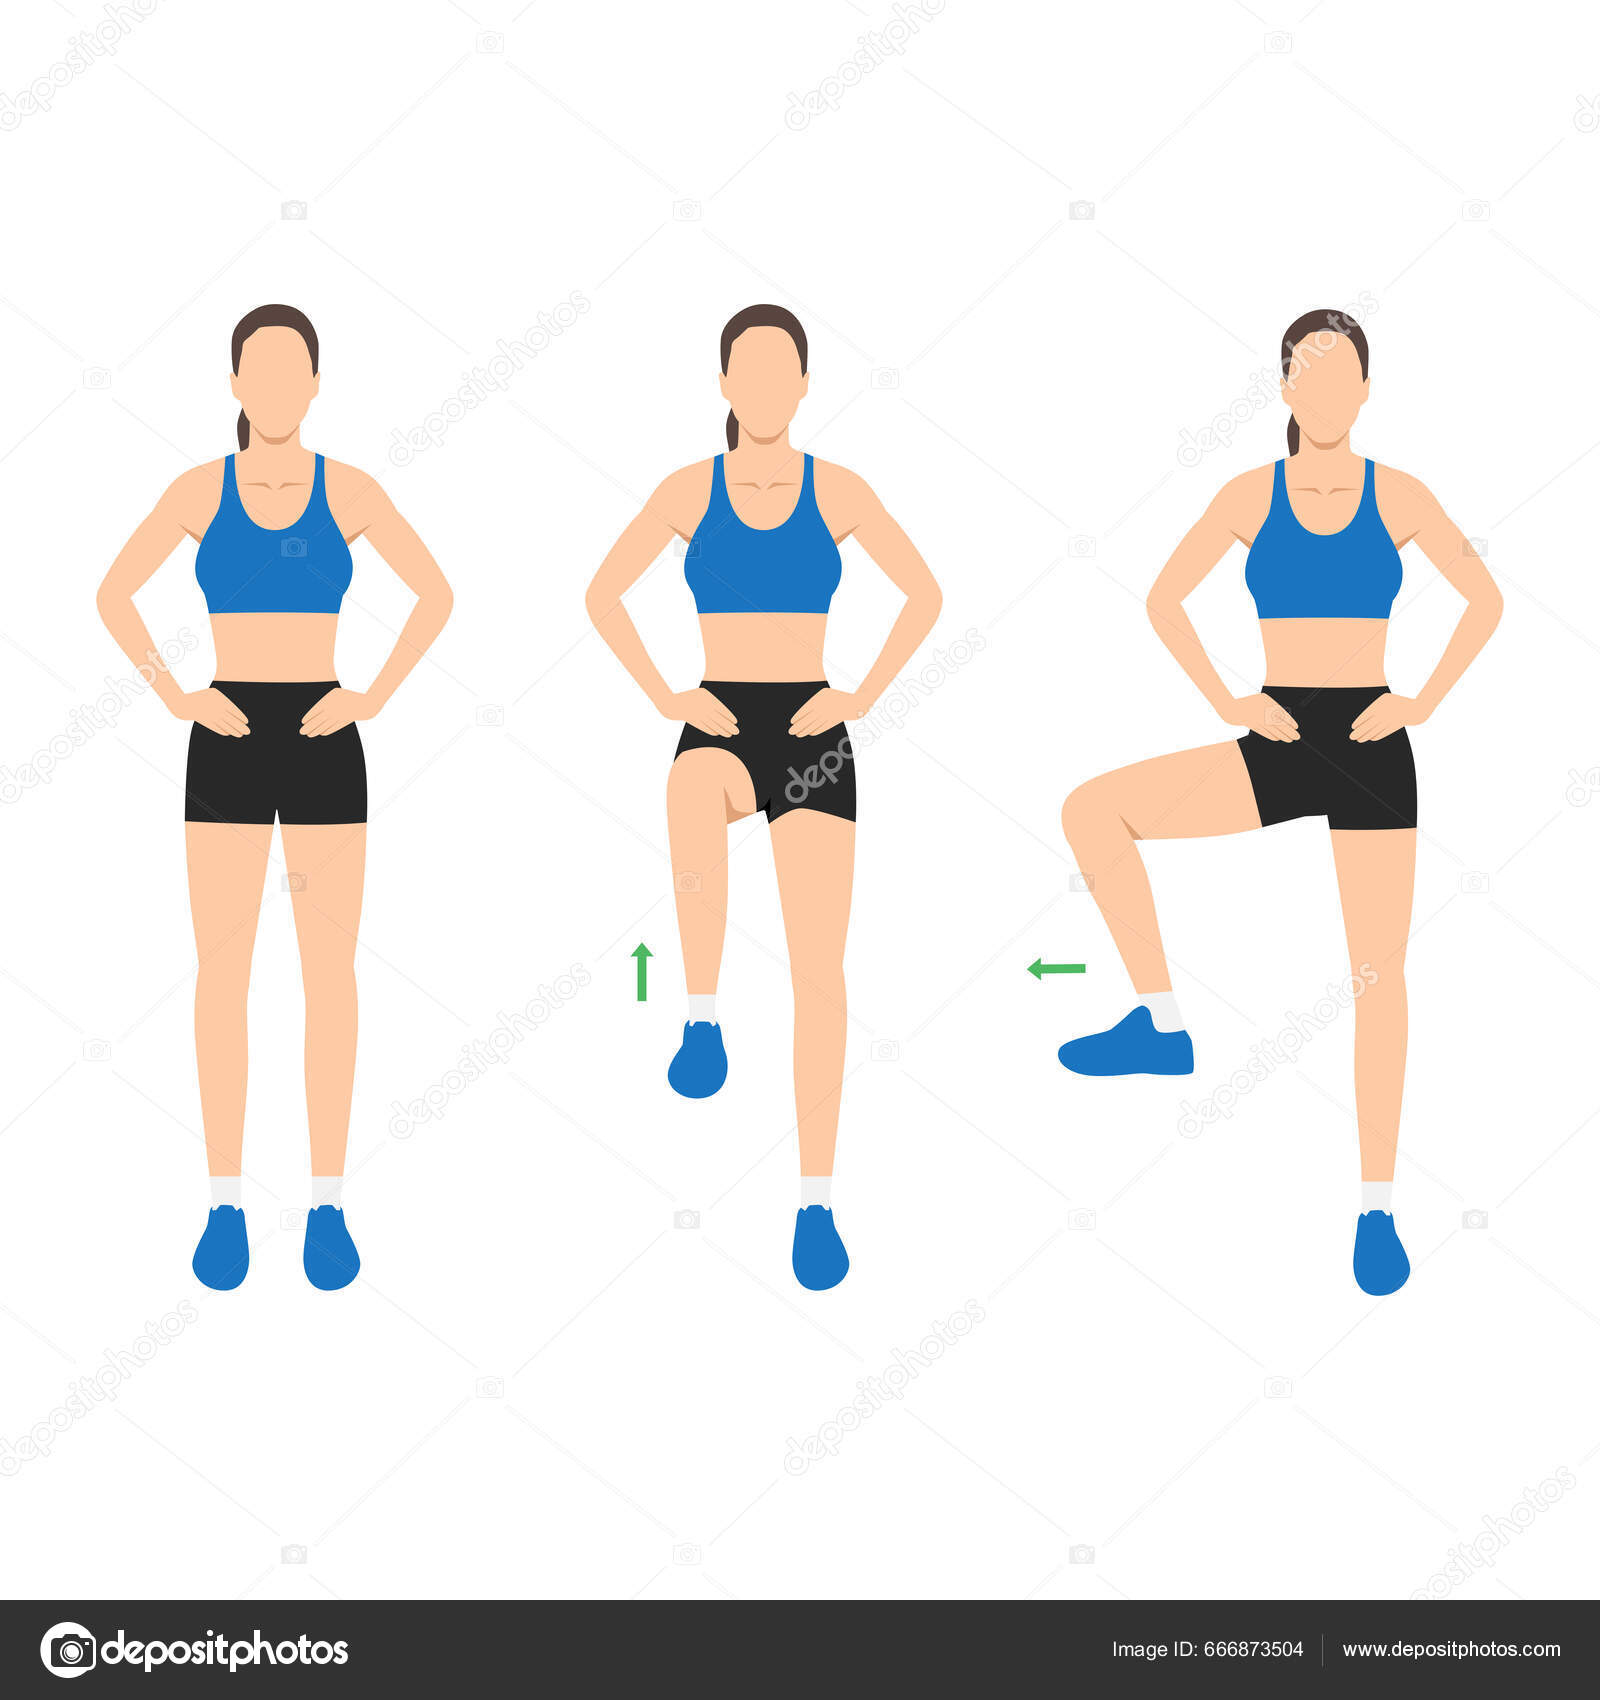 https://st5.depositphotos.com/80218270/66687/v/1600/depositphotos_666873504-stock-illustration-woman-doing-exercise-single-leg.jpg